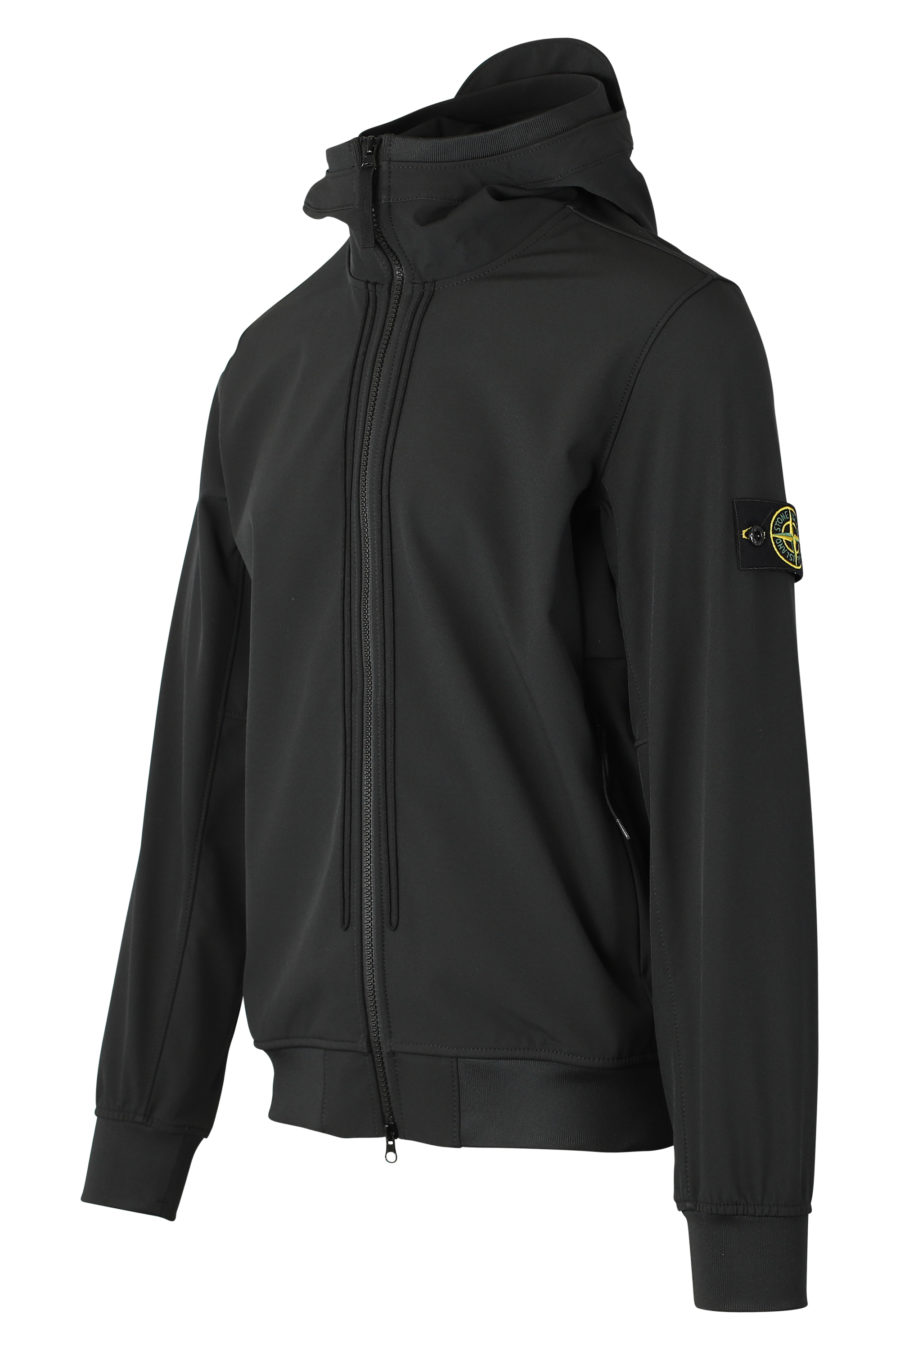 Schwarze Jacke mit Kapuze und Logoaufnäher - IMG 9307